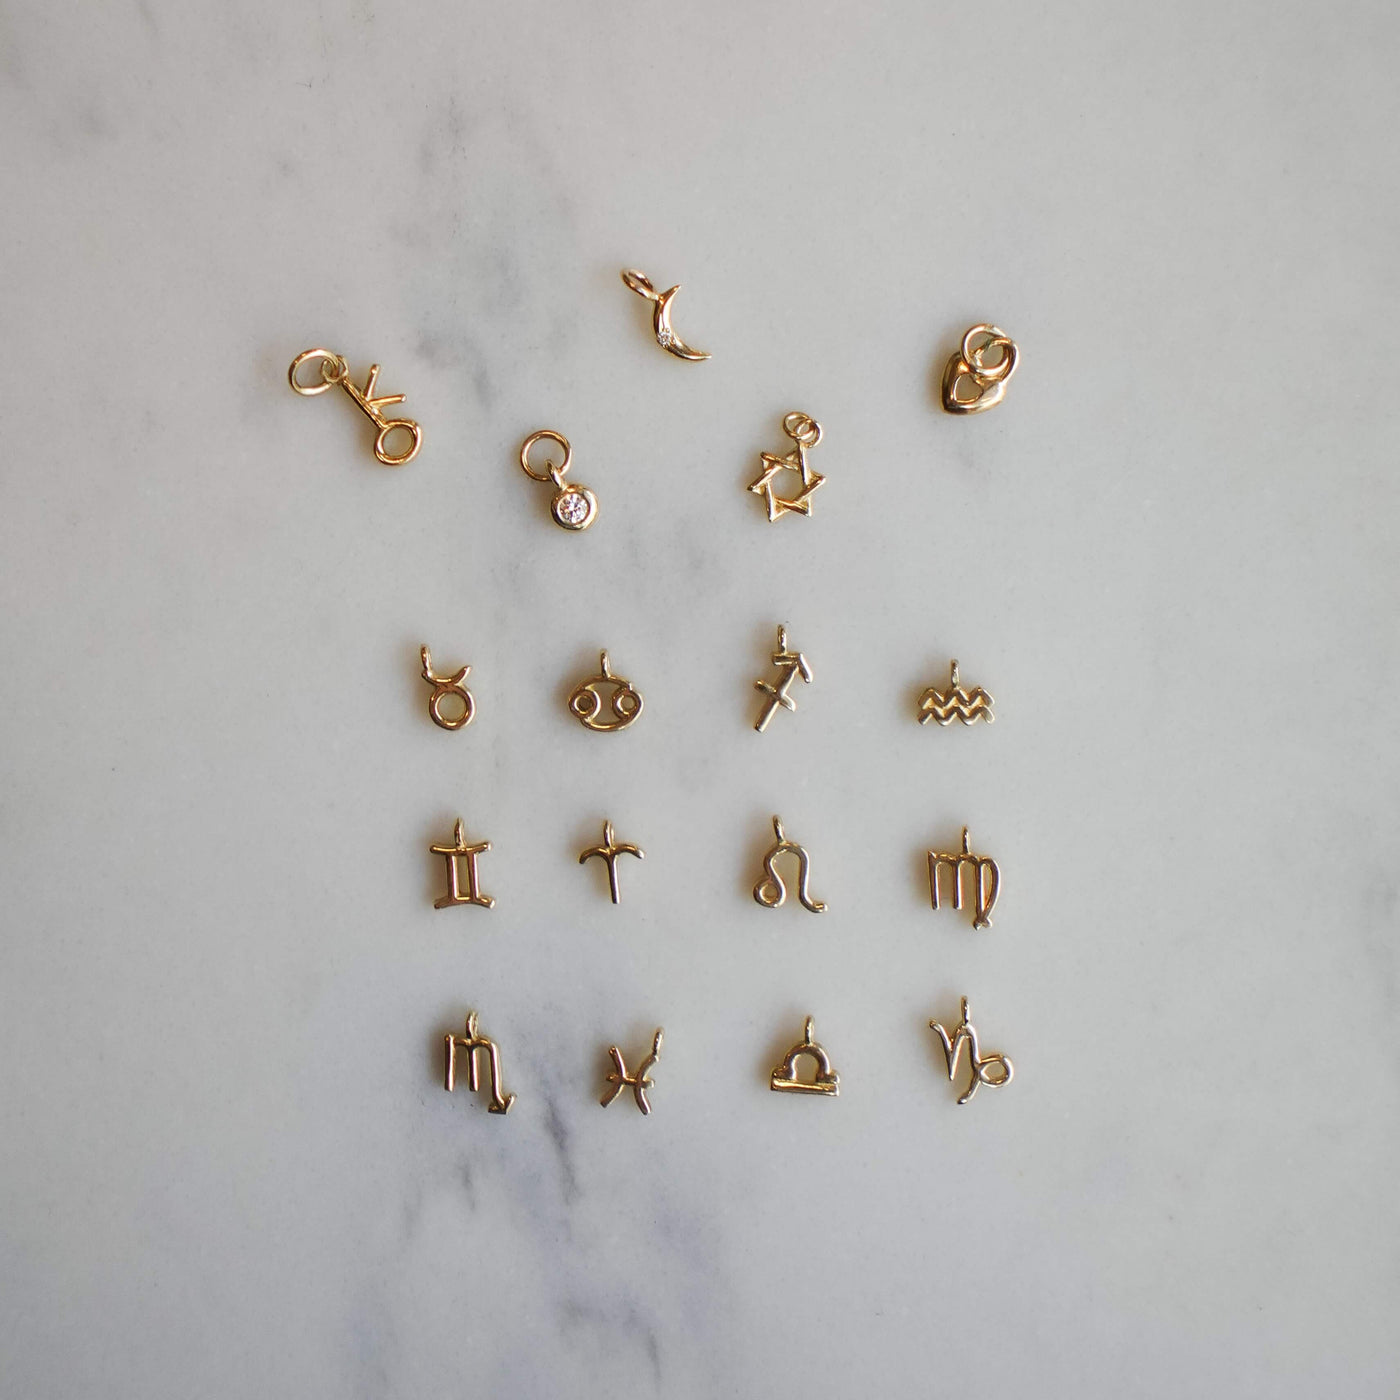 Small Wendy Pendant Forever Bracelet 14K Gold Bracelets 